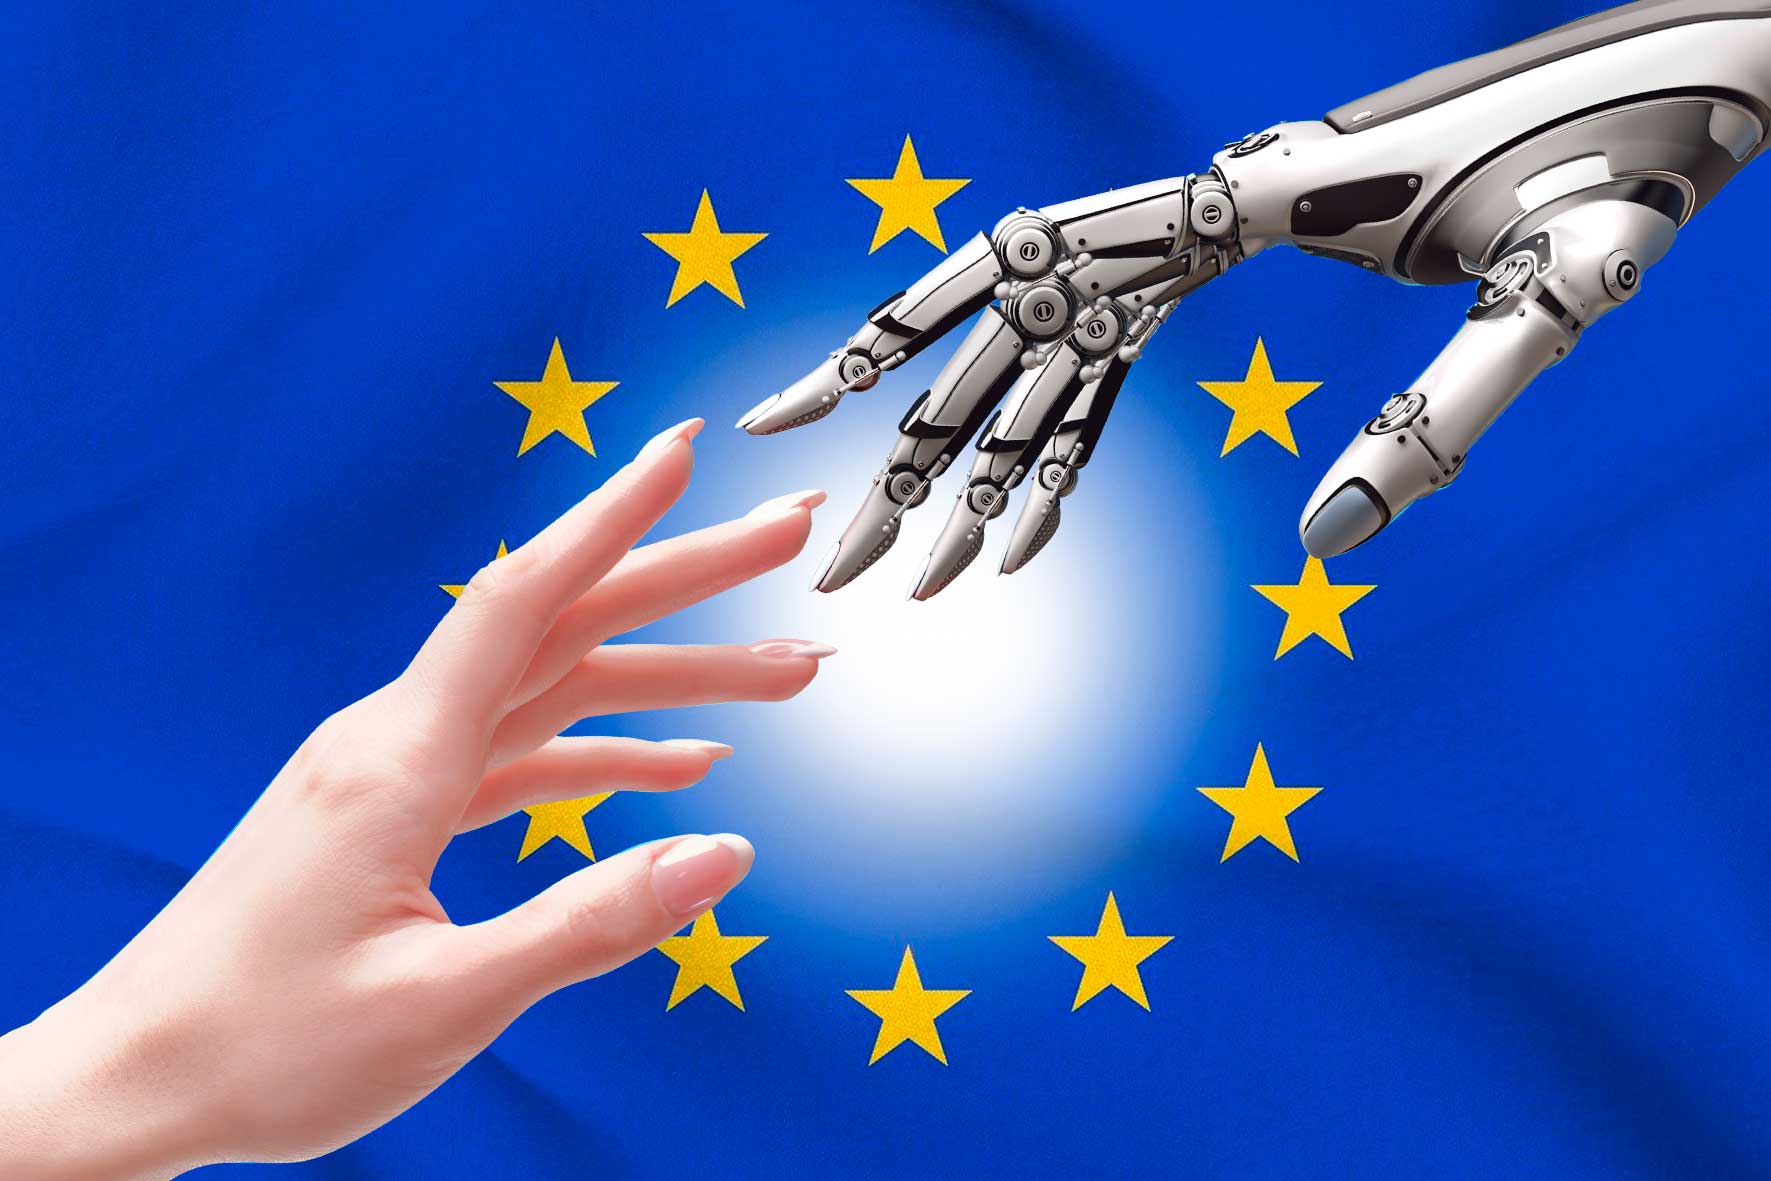 Com pots aplicar la intel·ligència artificial al teu negoci amb els fons europeus NextGenerationEU?